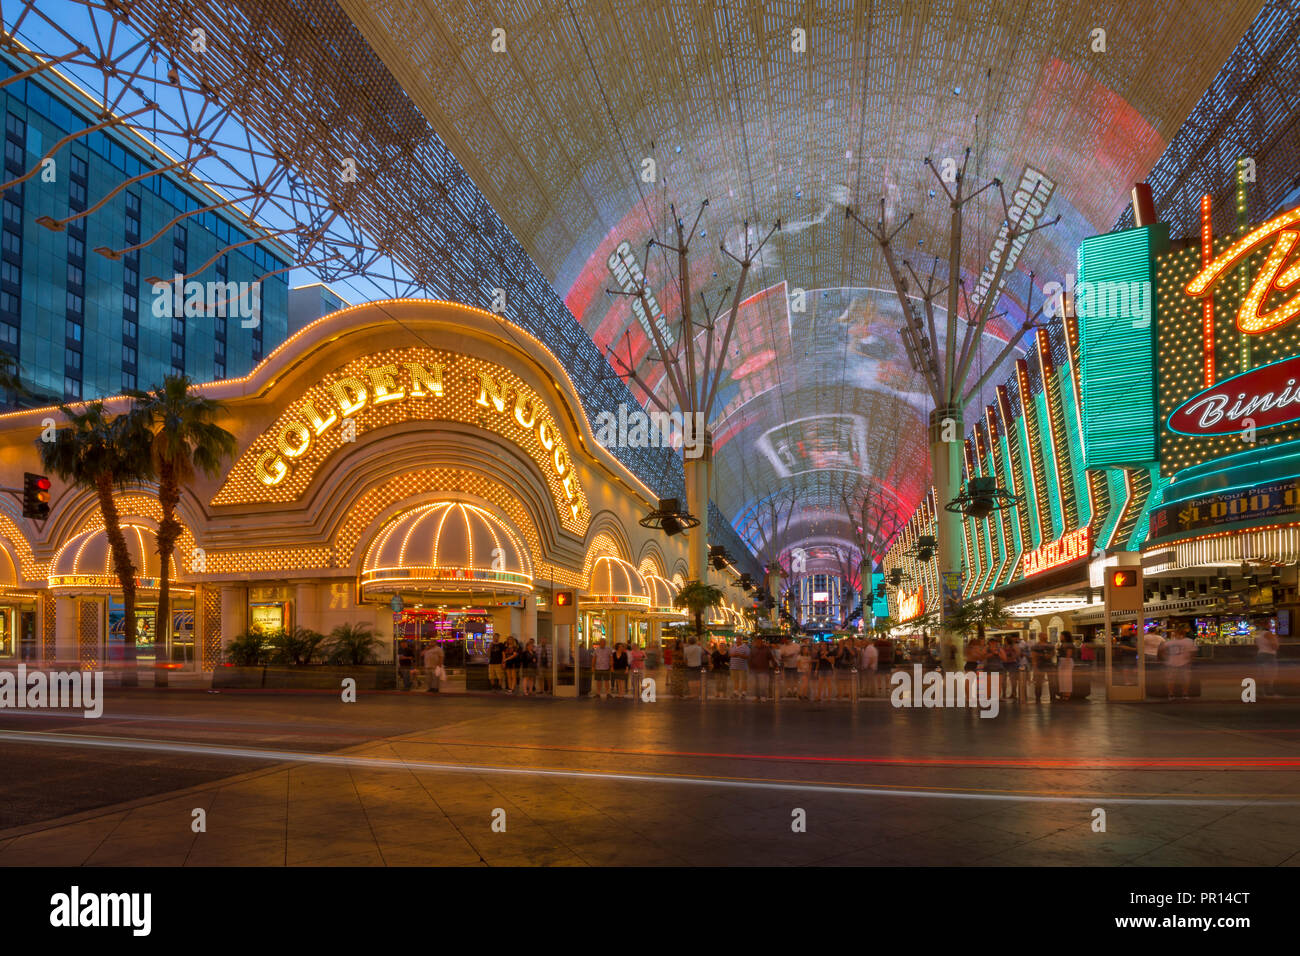 Golden Nugget Casino et de néons sur la Fremont Street Experience, au crépuscule, en centre-ville, Las Vegas, Nevada, États-Unis d'Amérique, Amérique du Nord Banque D'Images